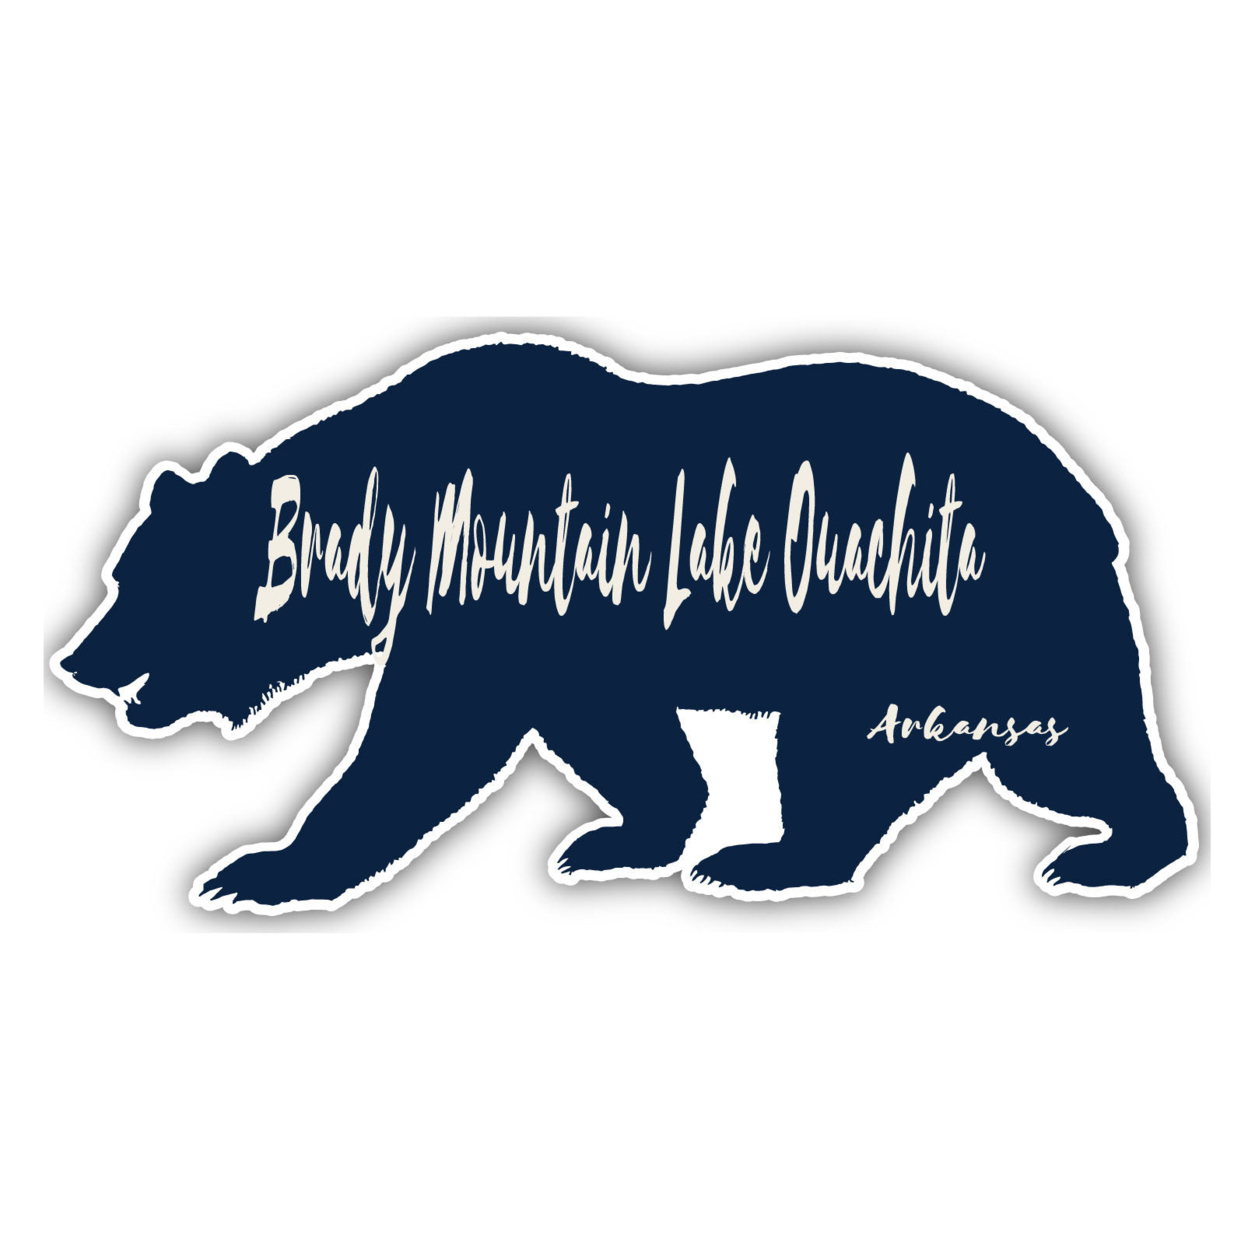 Brady Mountain Lake Ouachita Arkansas Souvenir Decorative Stickers (Choose Theme And Size) - 4-Pack, 12-Inch, Bear